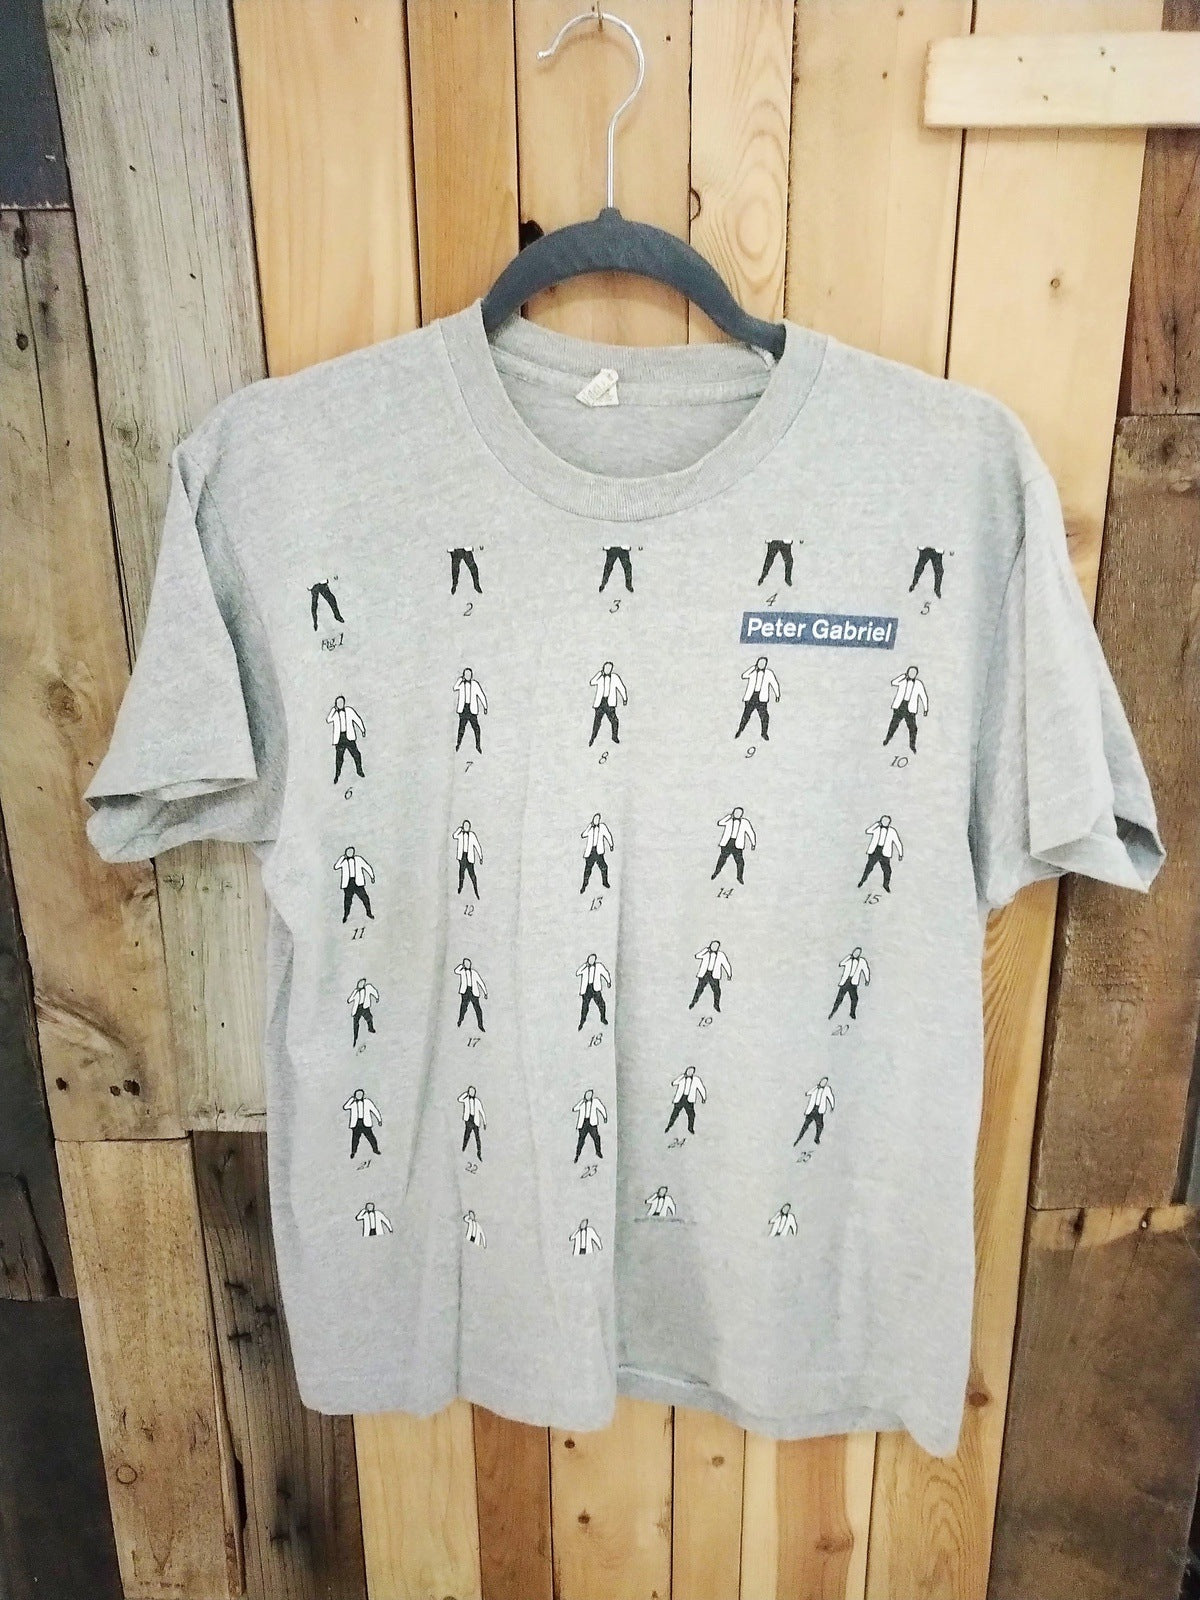 Peter Gabriel 1987 Original Tour T Shirt Women's Size XL 959892DQ